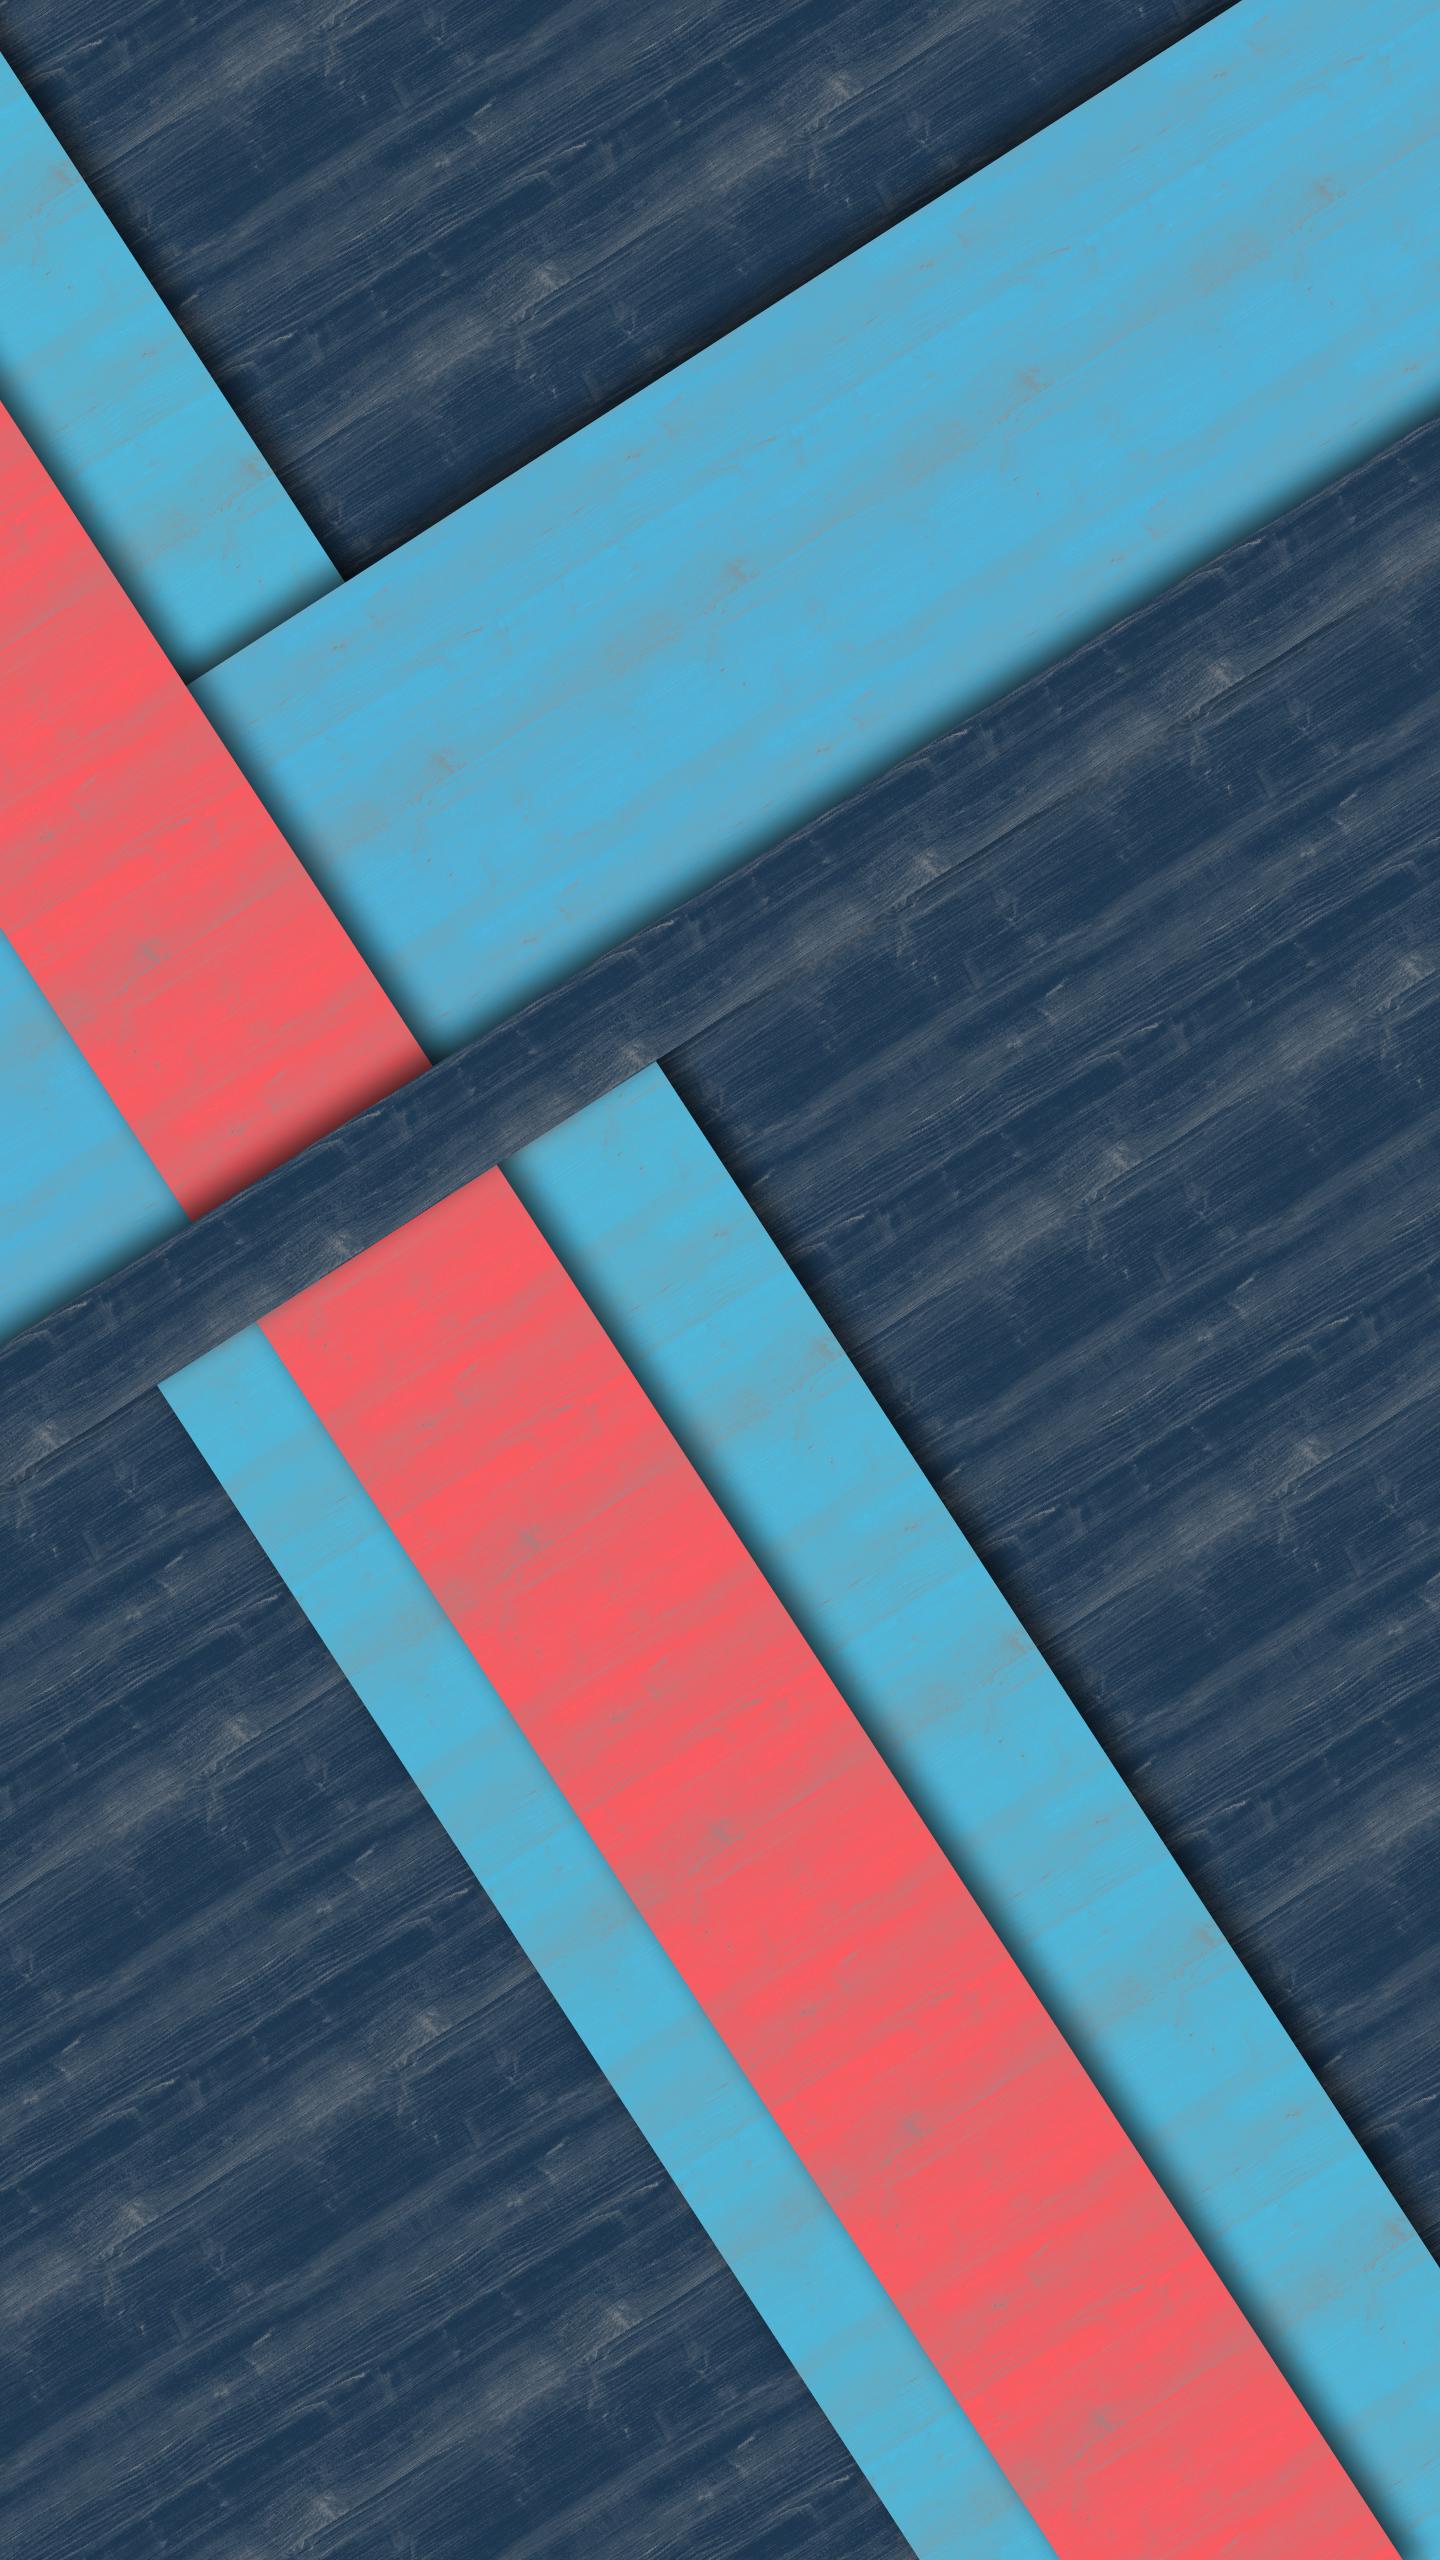 nexus 6p stock wallpaper,blu,turchese,prodotto,acqua,linea